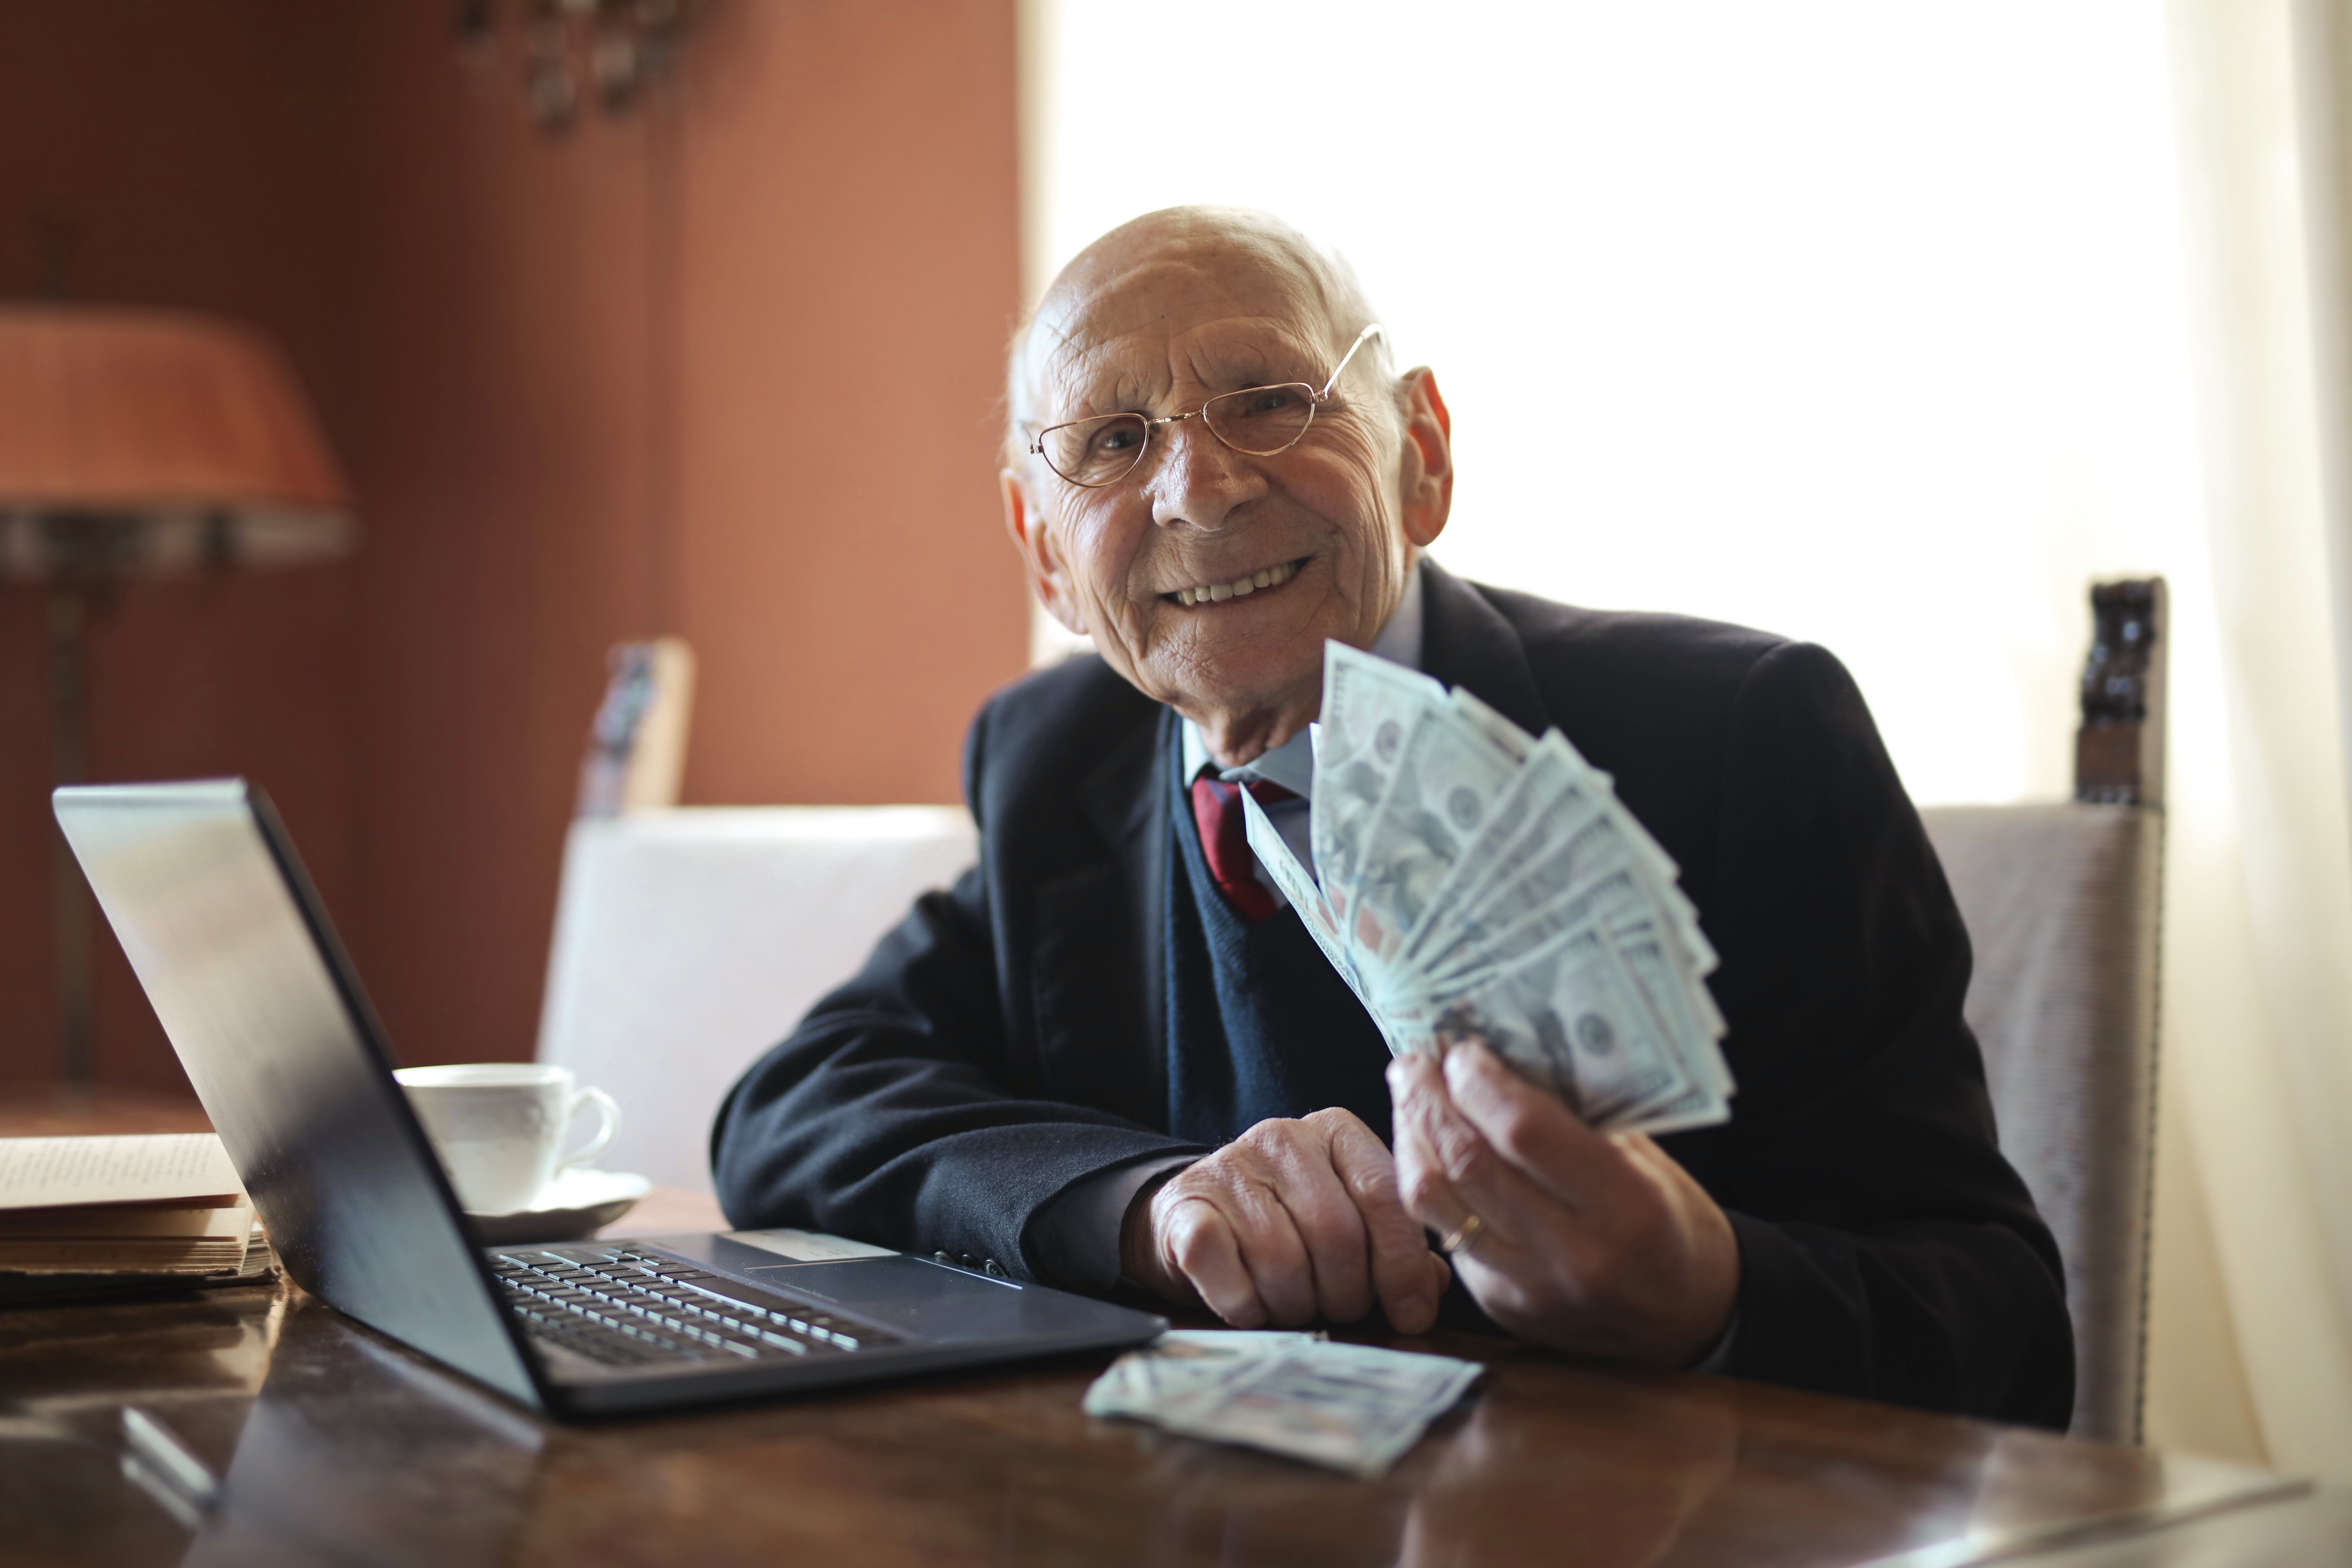 Un anciano sonríe mientras sostiene dinero. | Fuente: Pexels